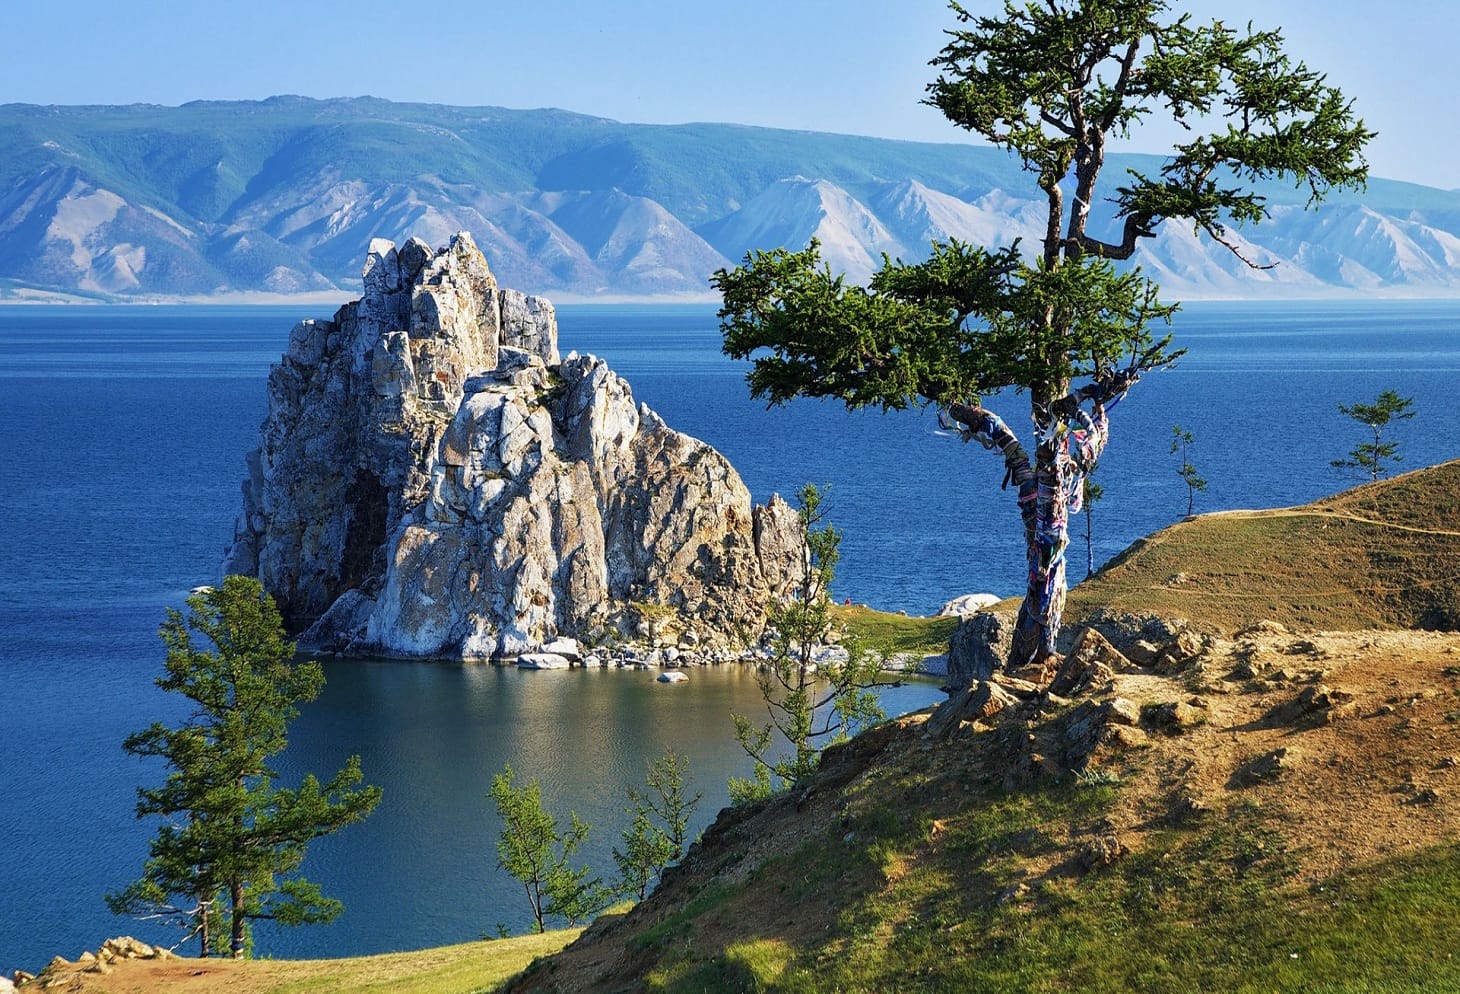 Il lago Baikal è il bacino di acqua dolce più antico del mondo